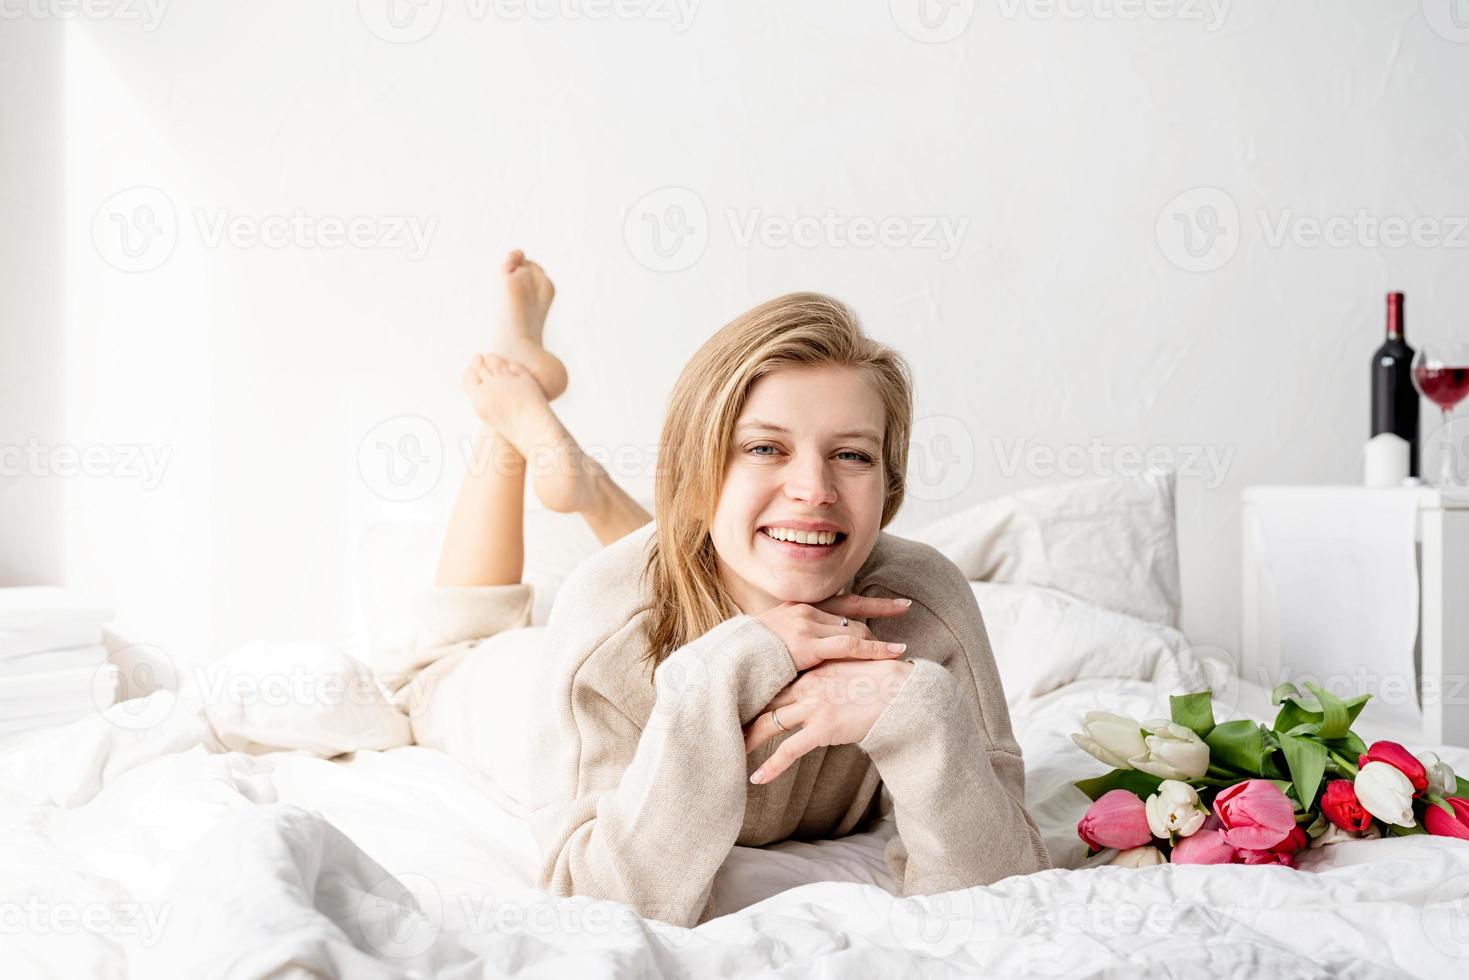 mulher deitada na cama de pijama segurando um buquê de flores de tulipa foto